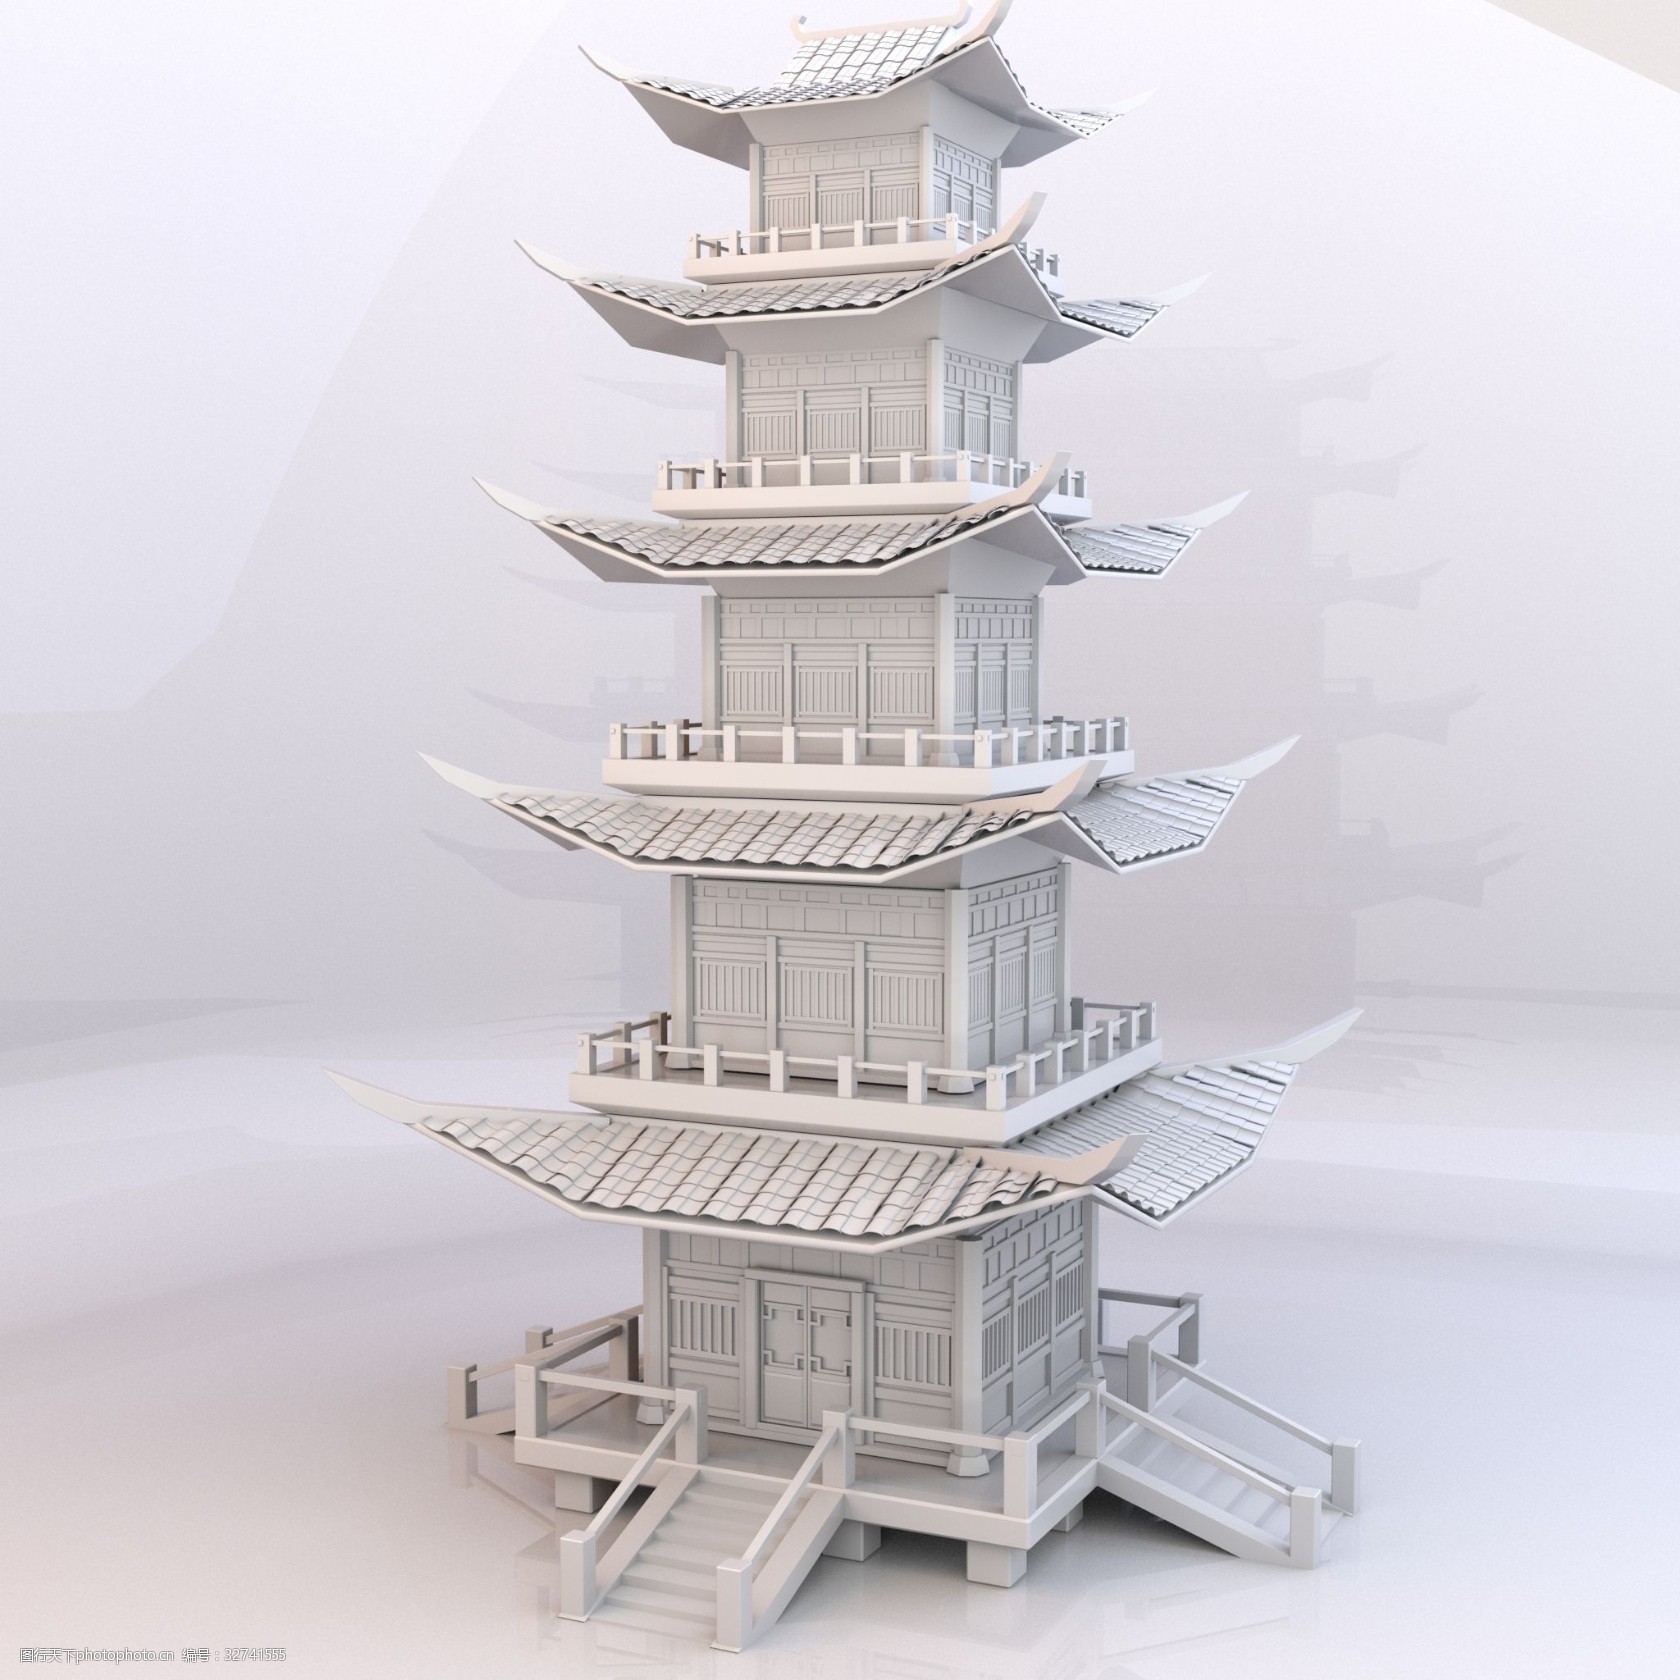 关键词:中国风精致阁楼古建筑 古建筑 精致阁楼 中国风 塔楼 模型